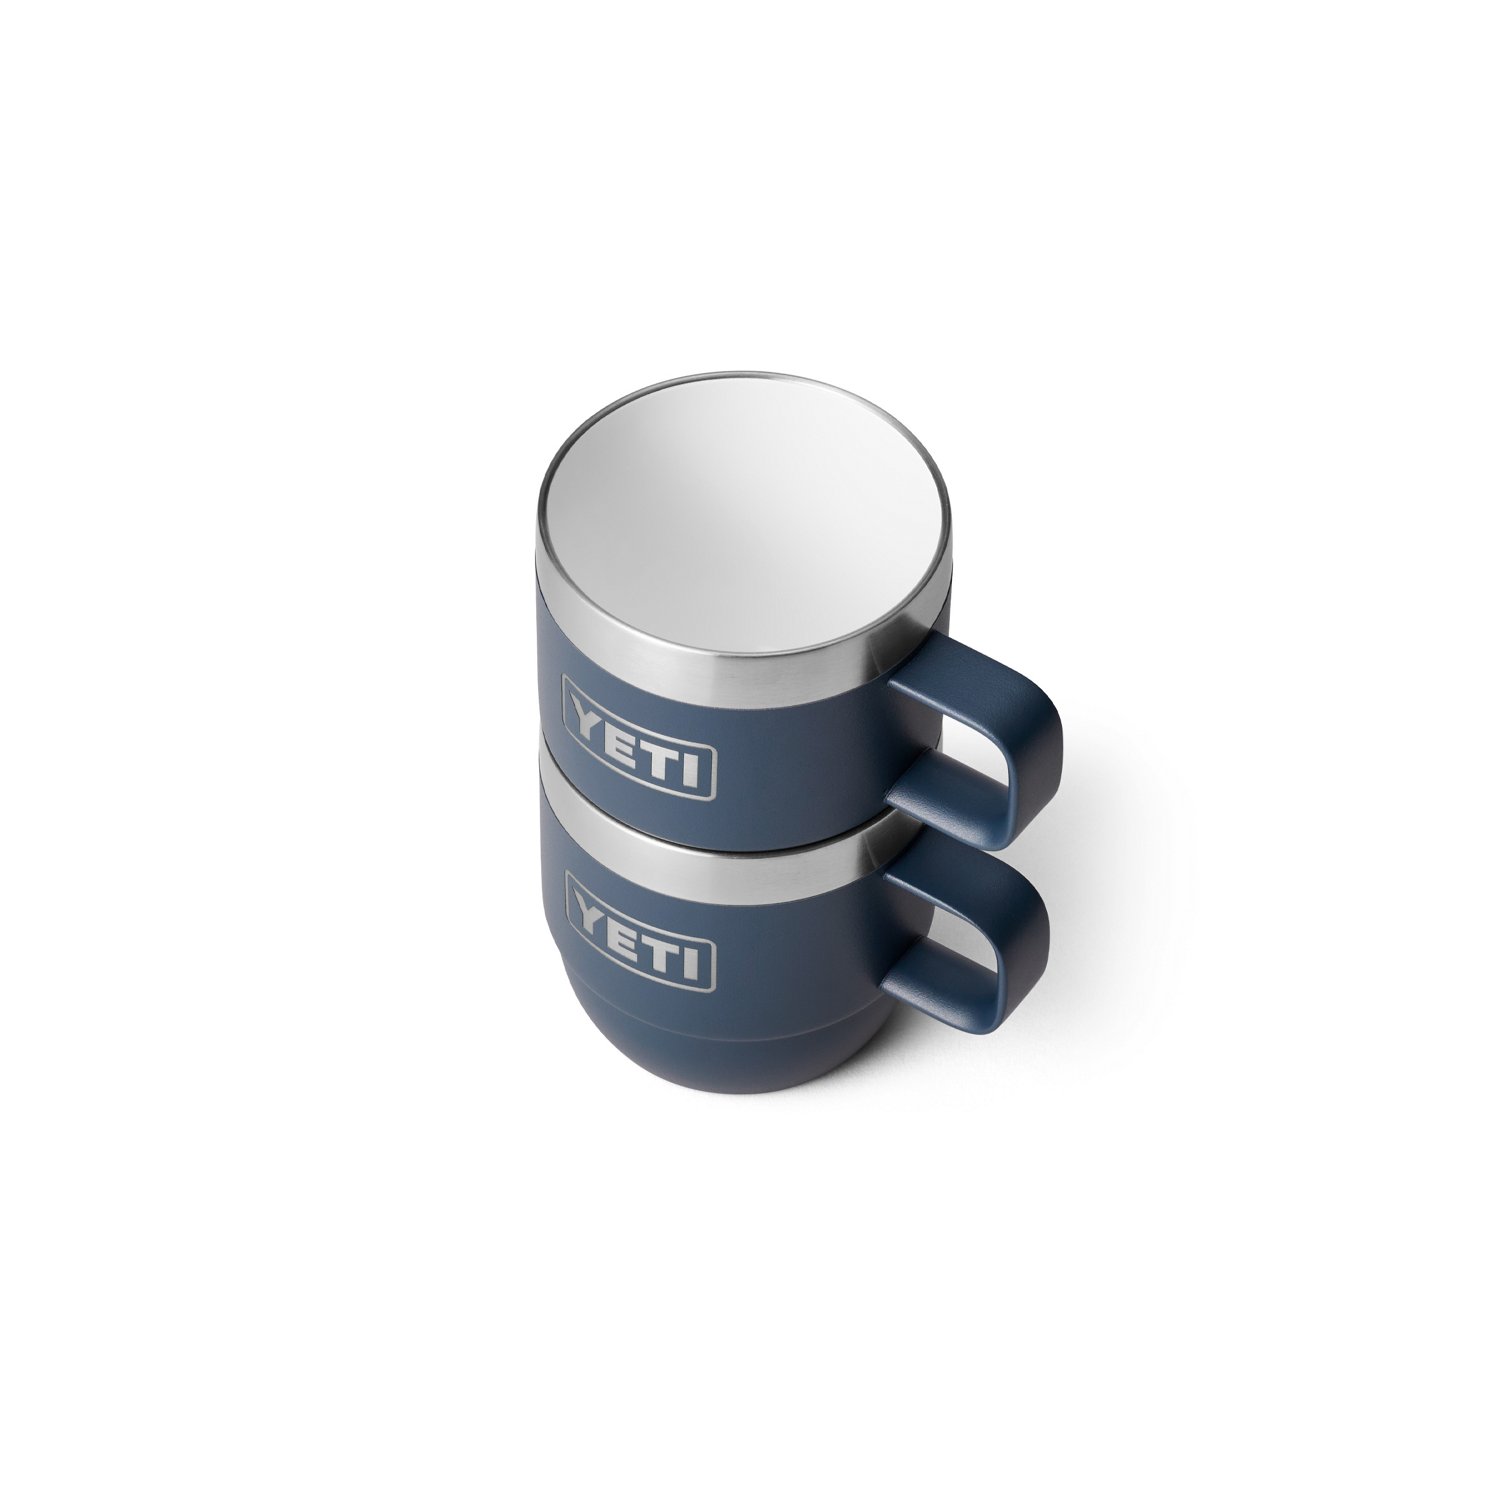 YETI 6 oz. Rambler Stackable Espresso Cups